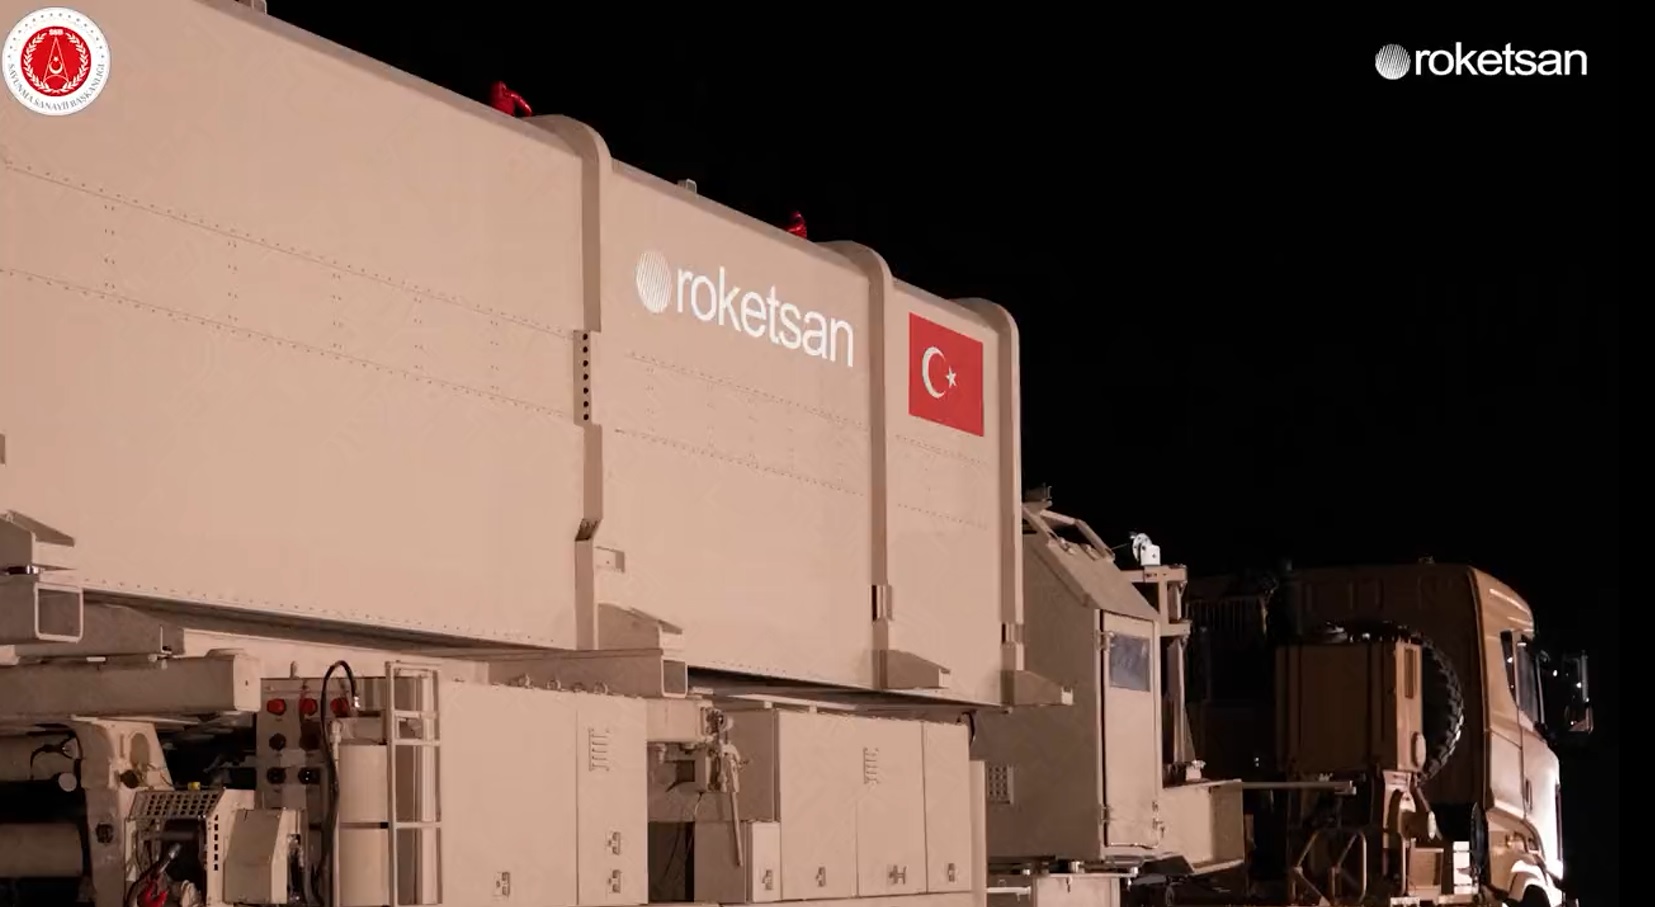 Roketsan prezentuje CENK, pierwszą turecką rakietę balistyczną średniego zasięgu, która może trafić w cele oddalone nawet o 1000 km.